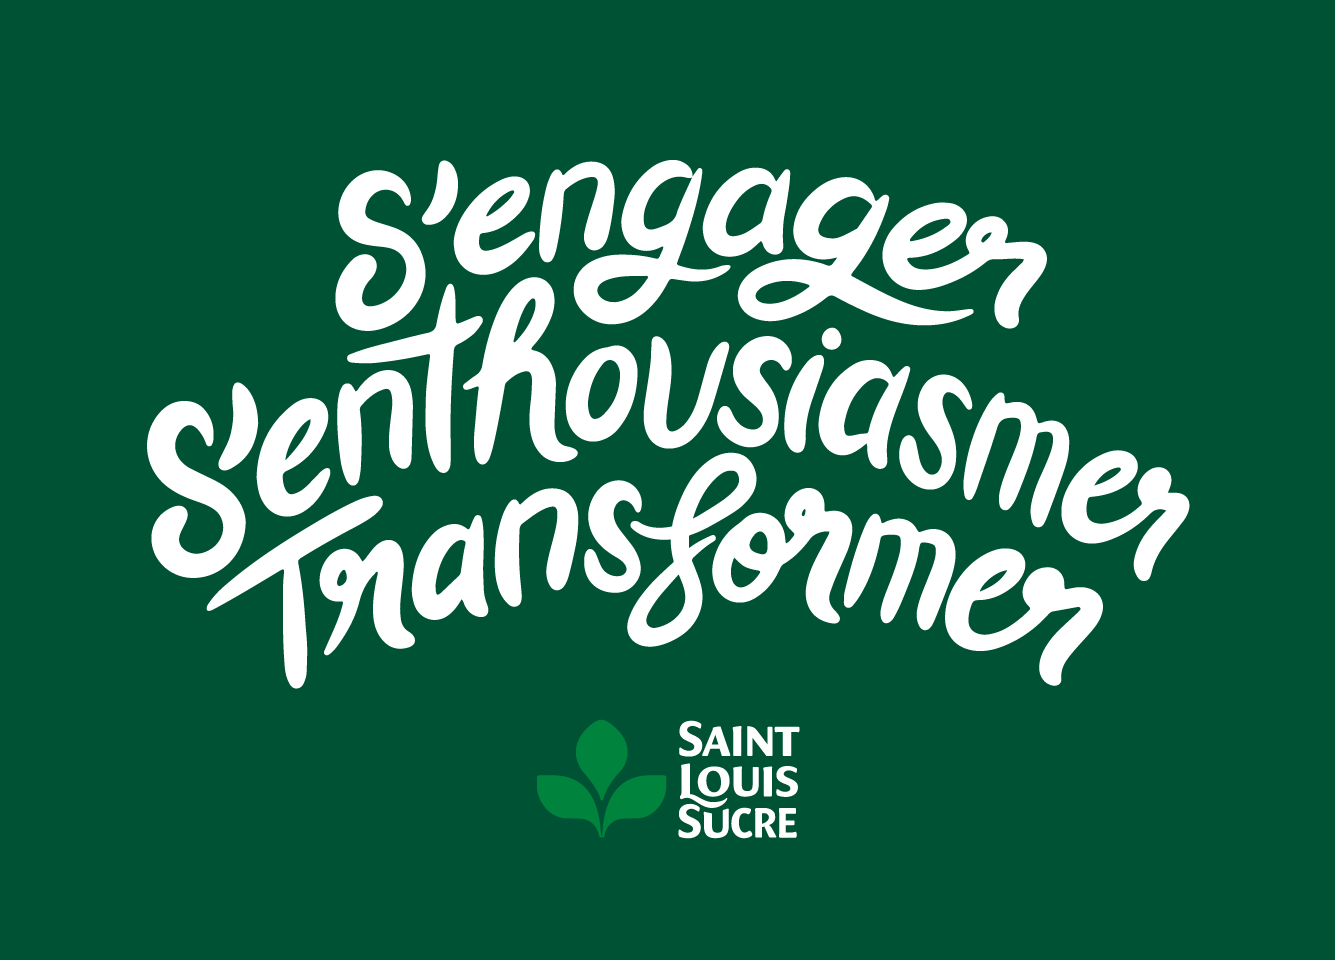 Agence 3e étage - Saint Louis sucre - Engagements - Vignette